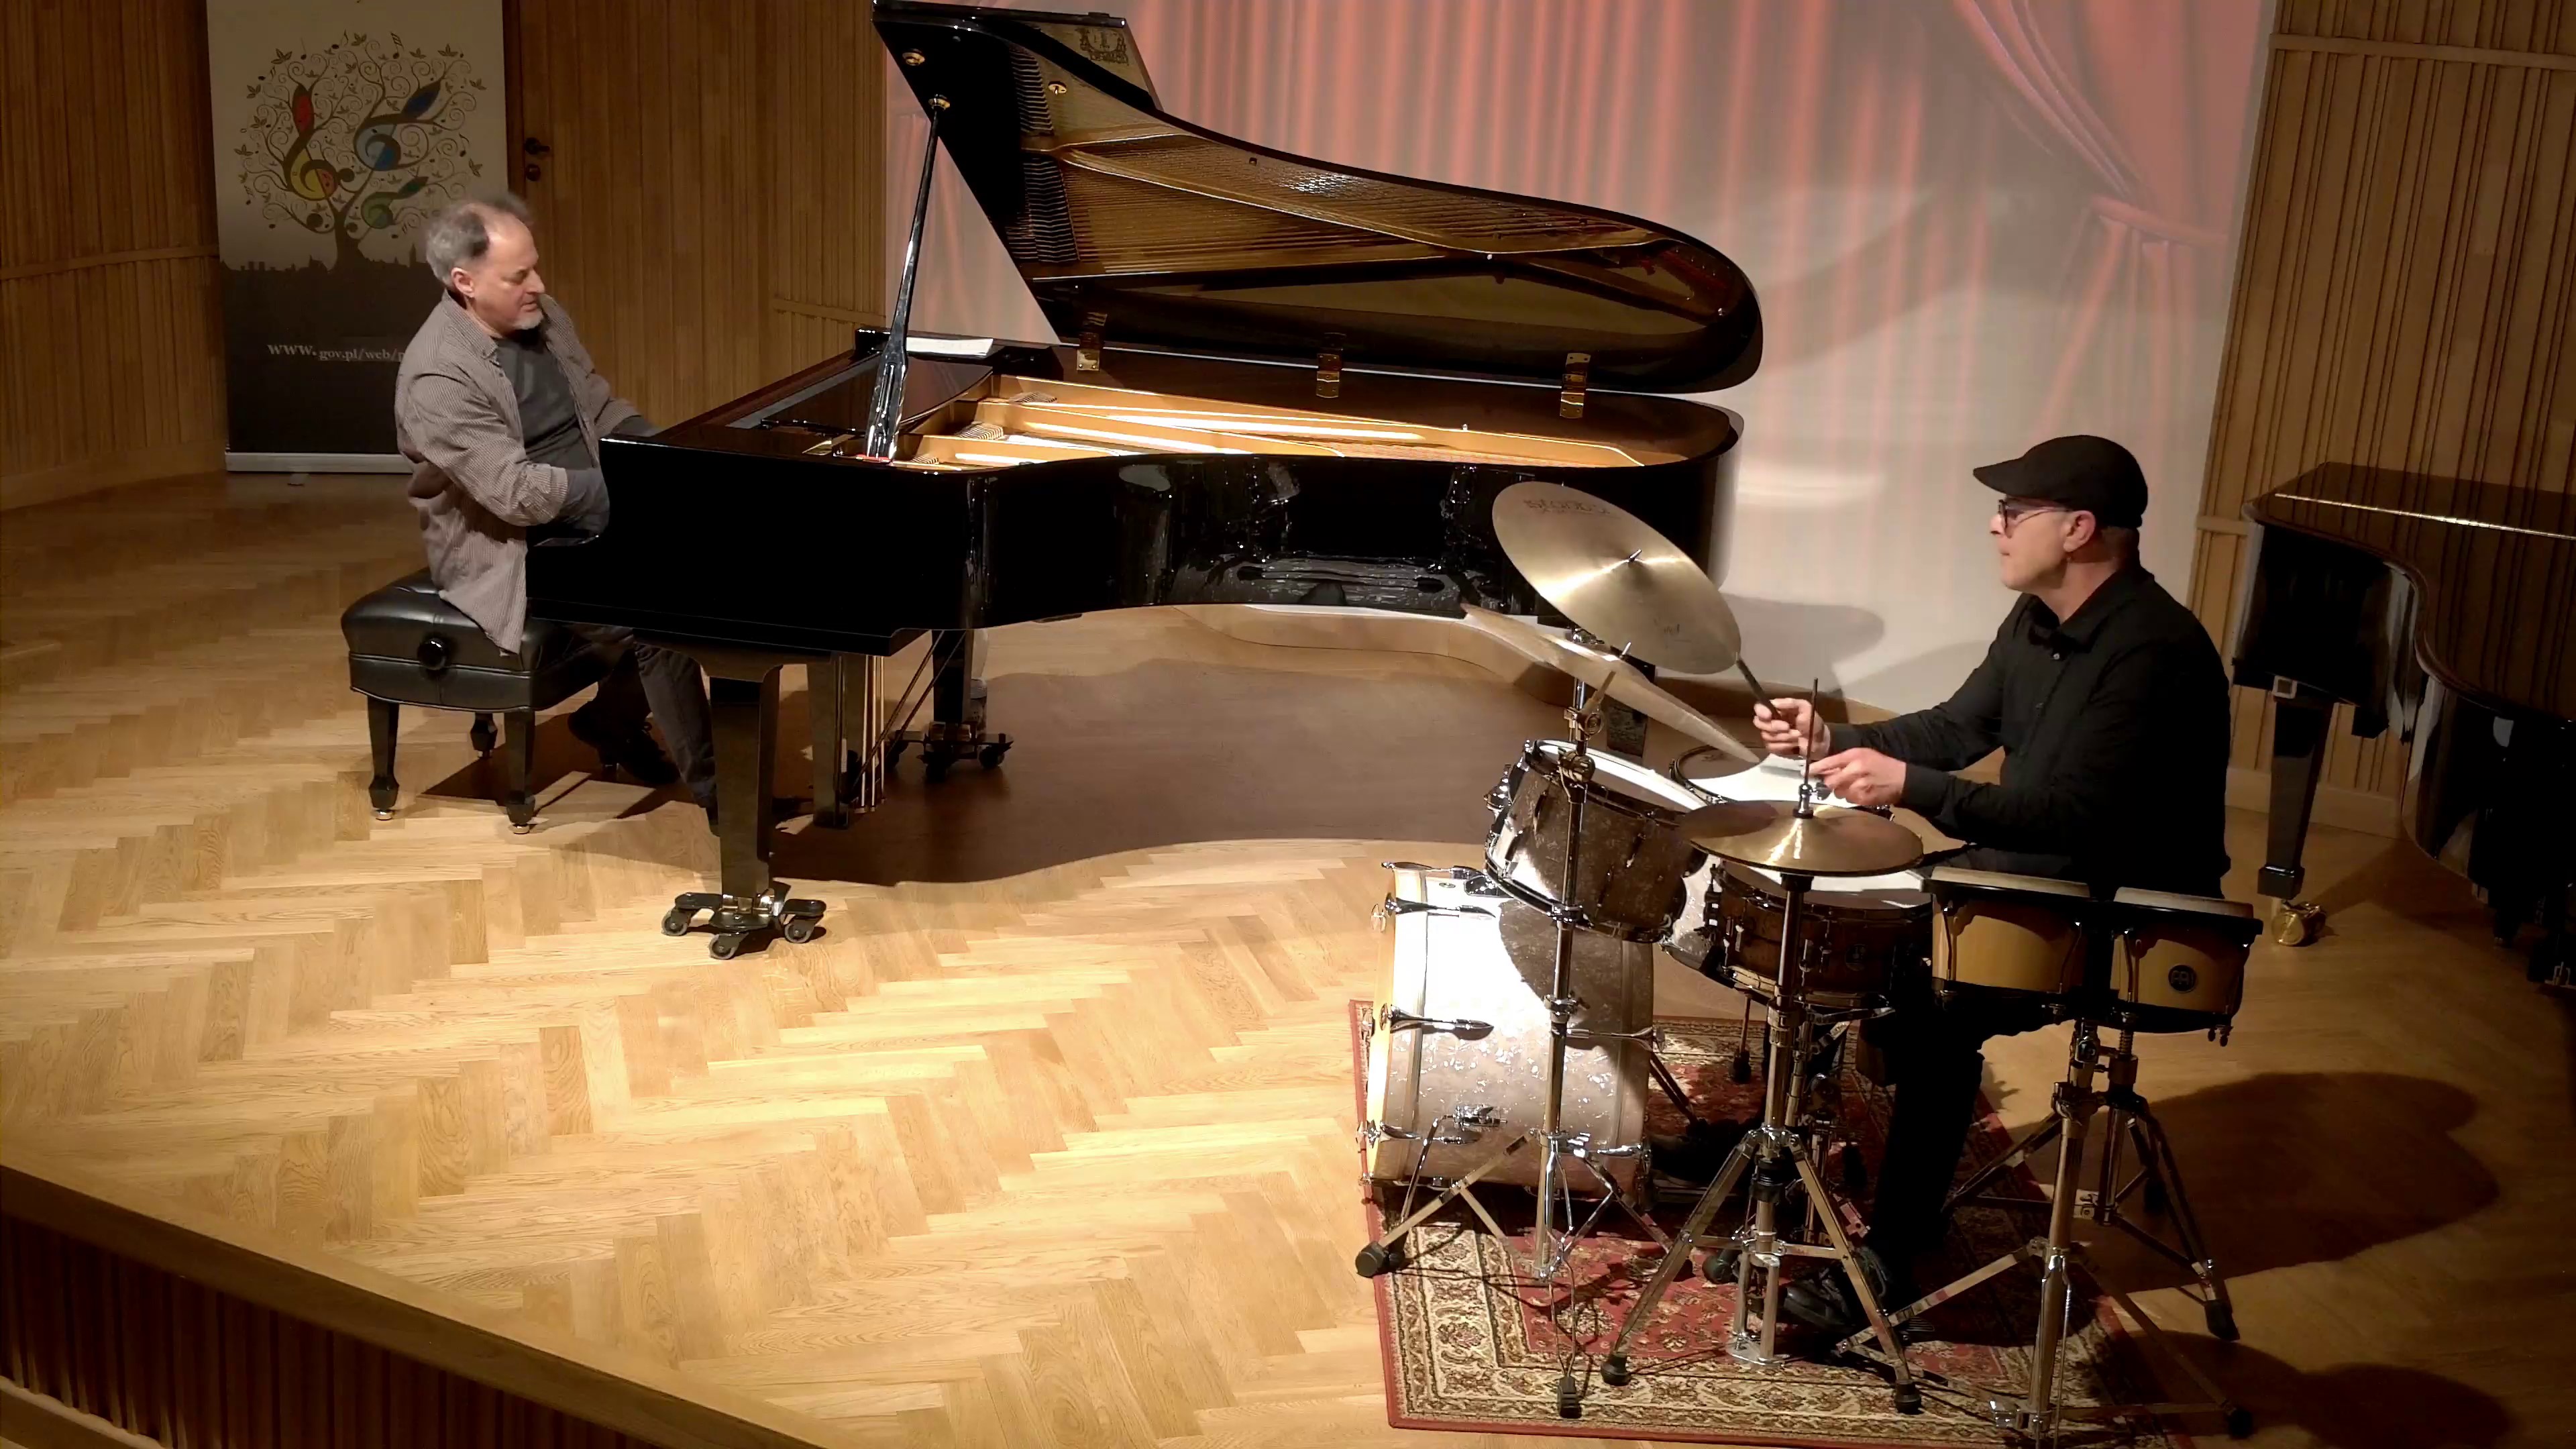 Zdjęcie. Na estradzie sali koncertowej występują: pianista jazzowy grający na dużym czarnym fortepianie oraz perkusista na zestawie perkusyjnym.